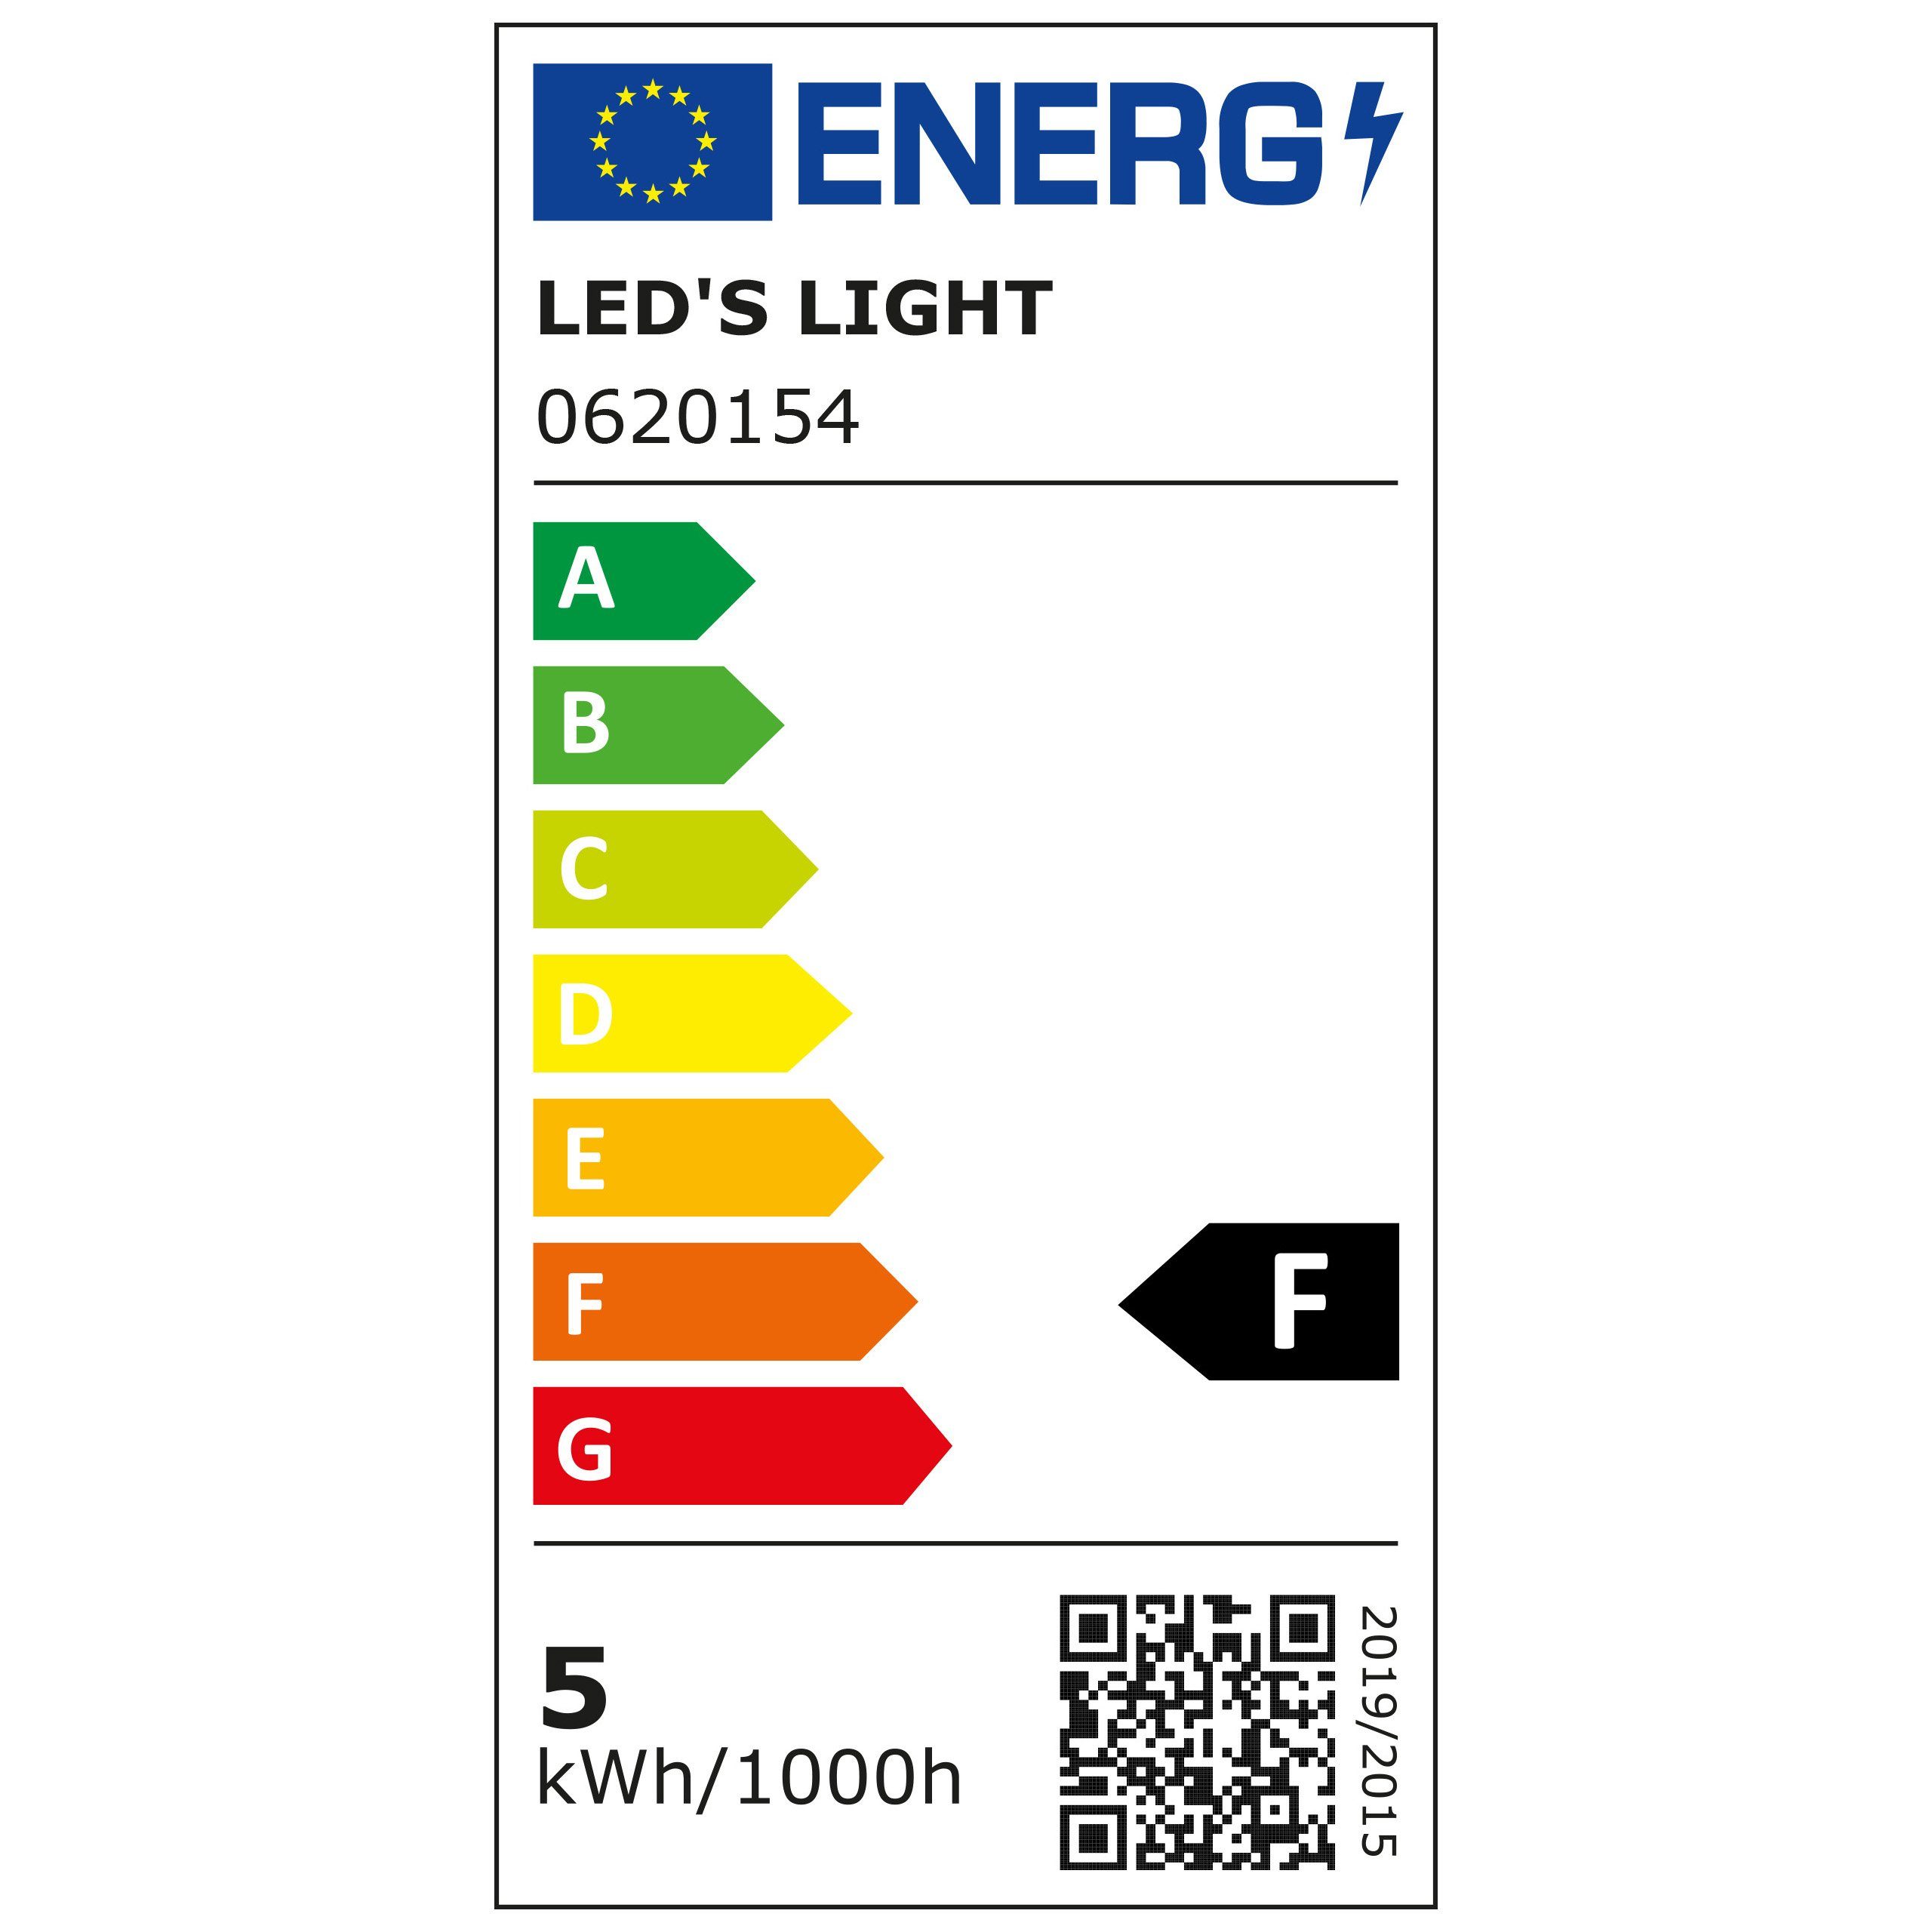 4.5W LED's 0620154 E14, Kerze, LED LED-Leuchtmittel warmweiß light C35 E14 dimmbar Klar